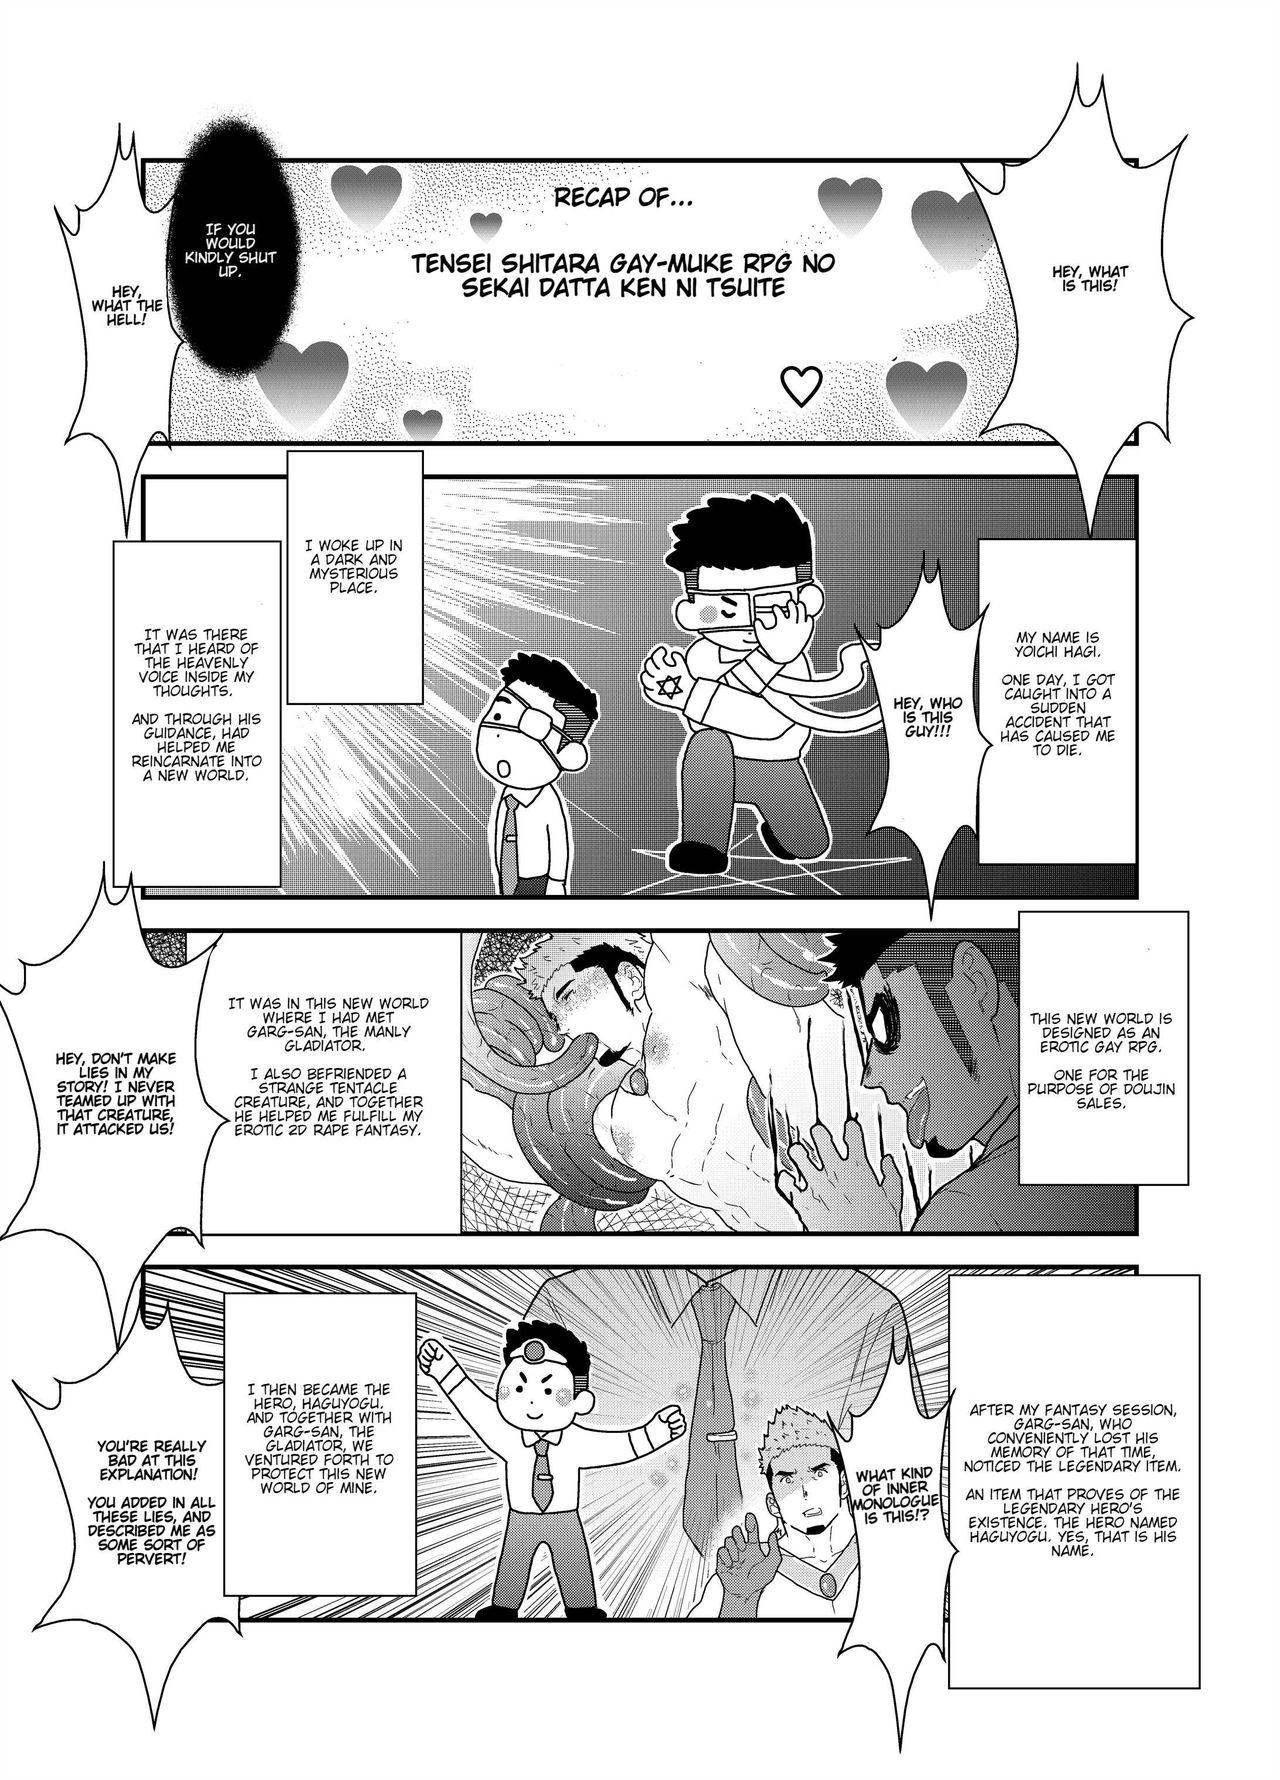 Tensei Shitara Gay-Muke RPG no Sekai datta Ken ni Tsuite 2 | Reincarnated Into an Erotic Gay RPG Part 2 4